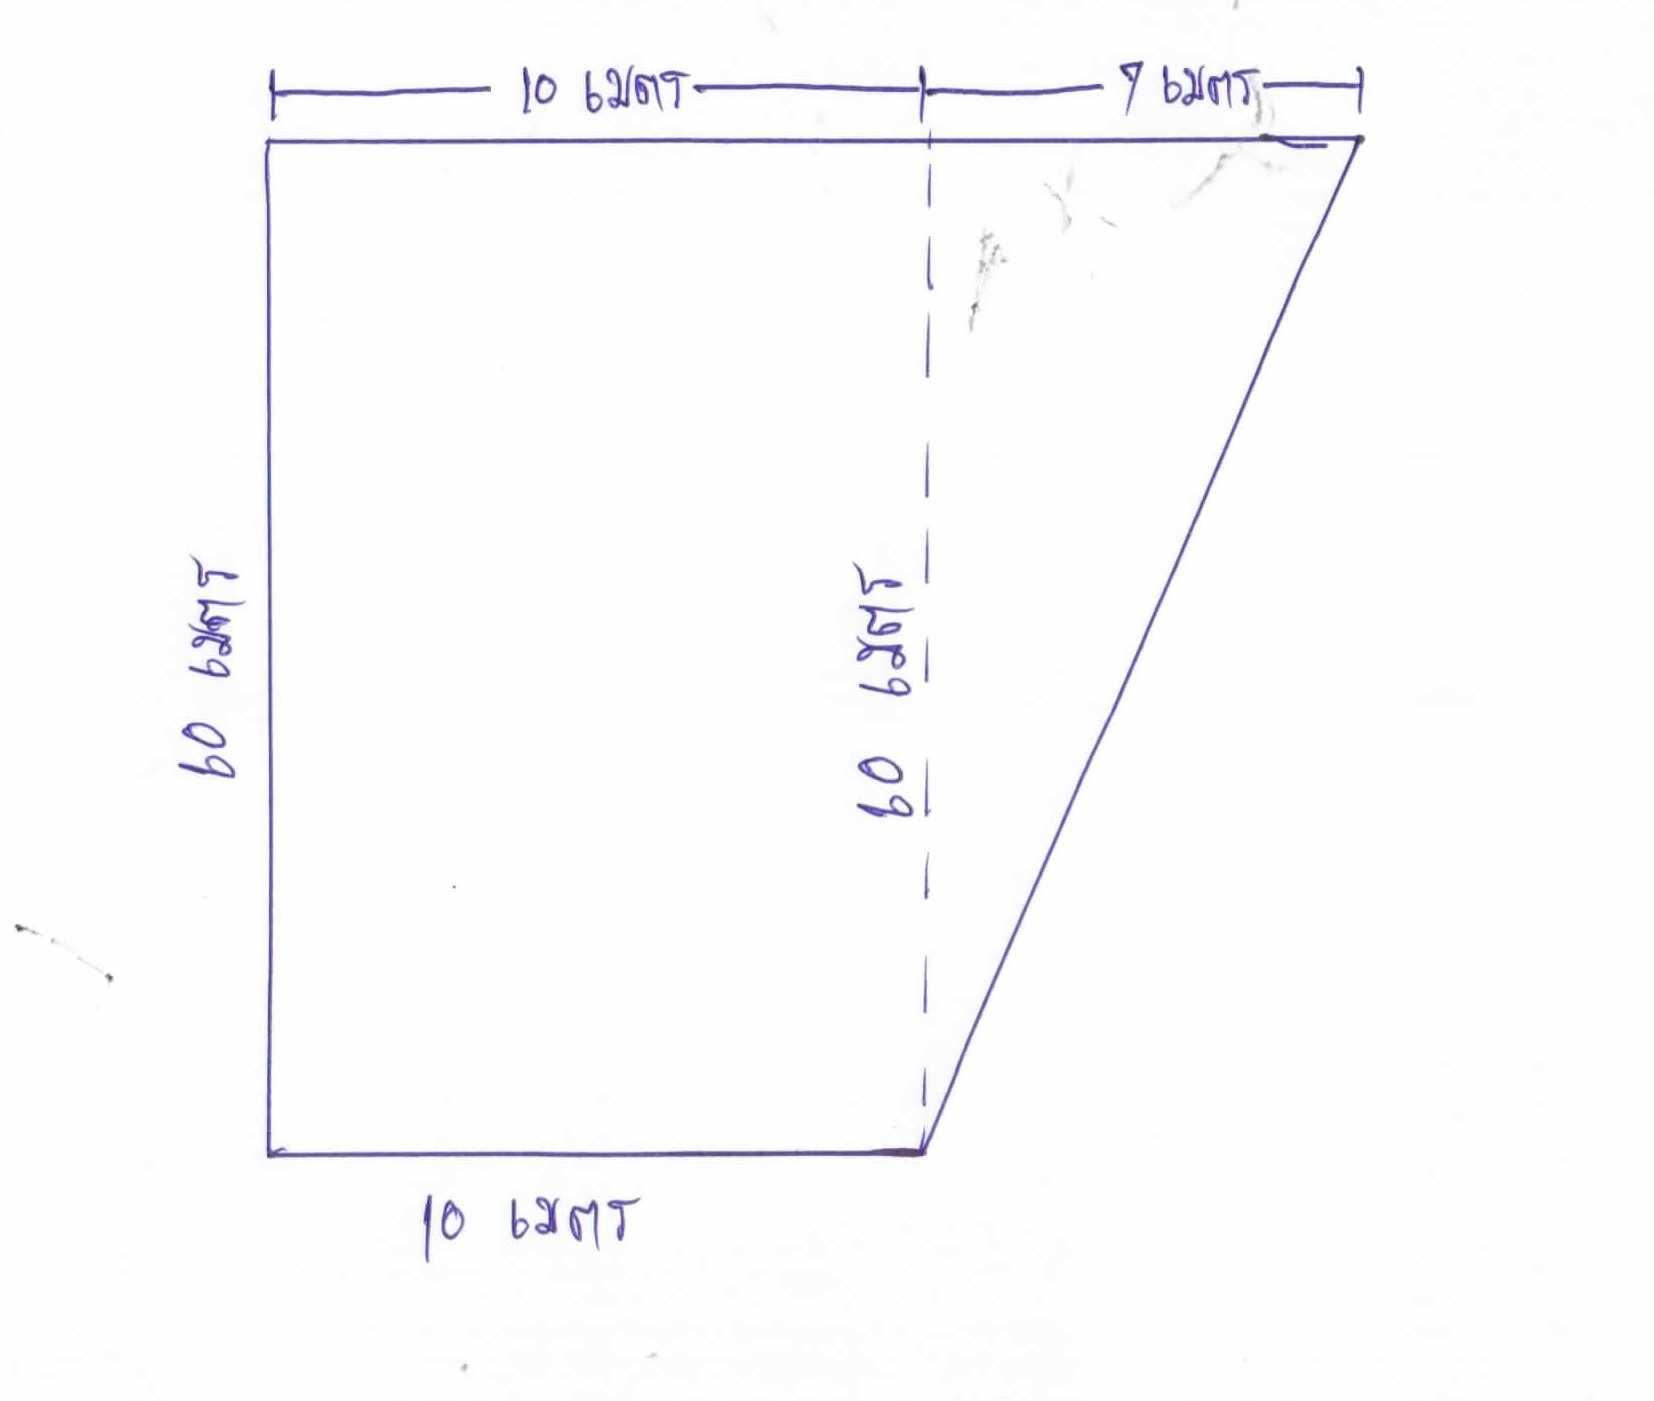 สอบถามเรื่องการคำนวณพื้นที่ดิน รูปสี่เหลี่ยมคางหมูครับ - Pantip